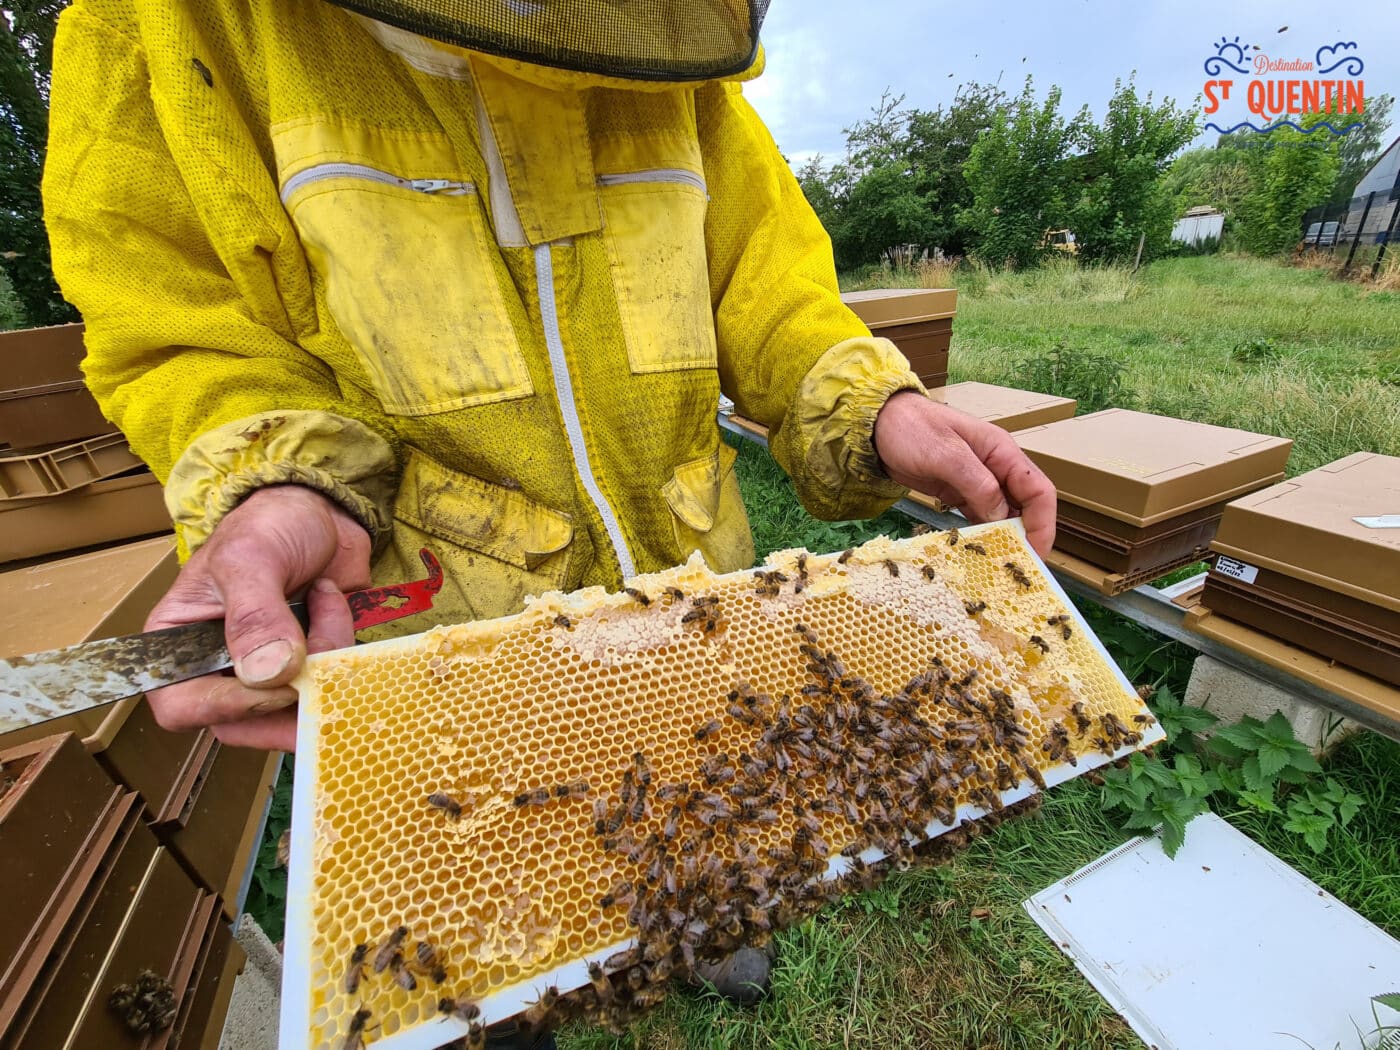 ambassadeur les abeilles de francilly 21 - Office de tourisme du Saint-Quentinois